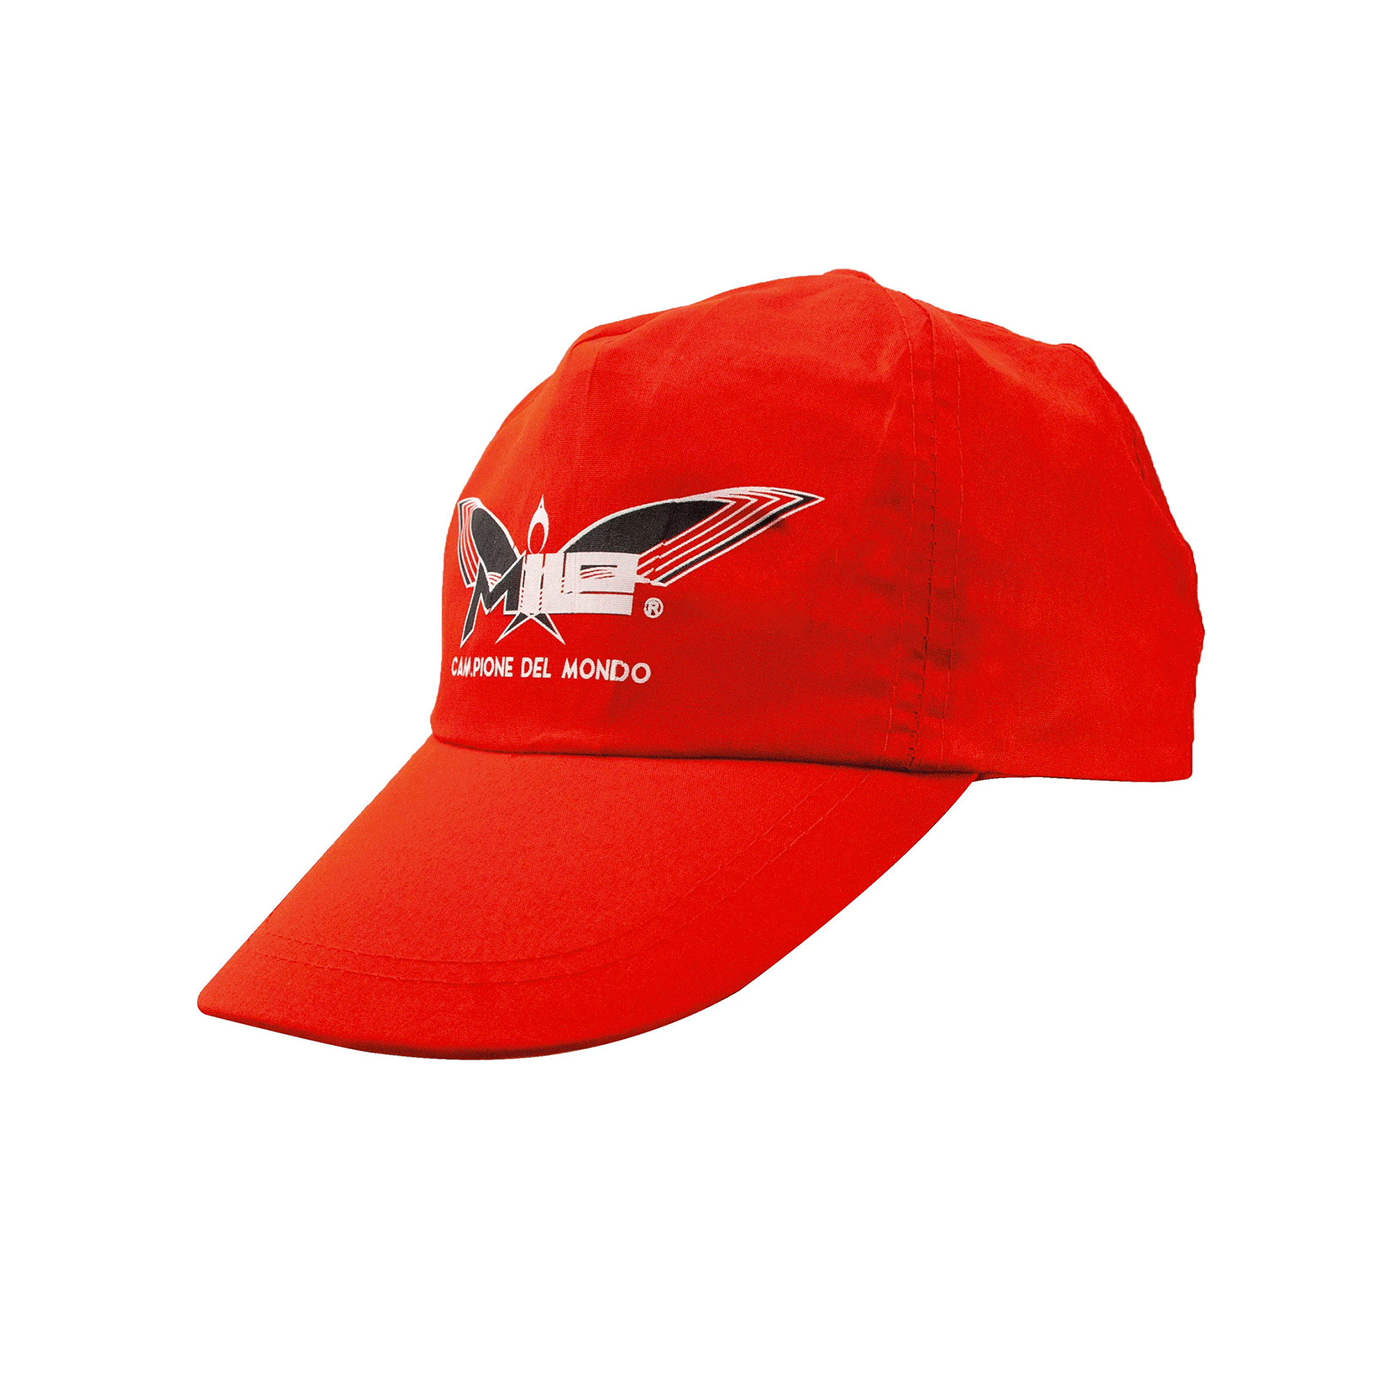 MILO - RED SUMMER HAT